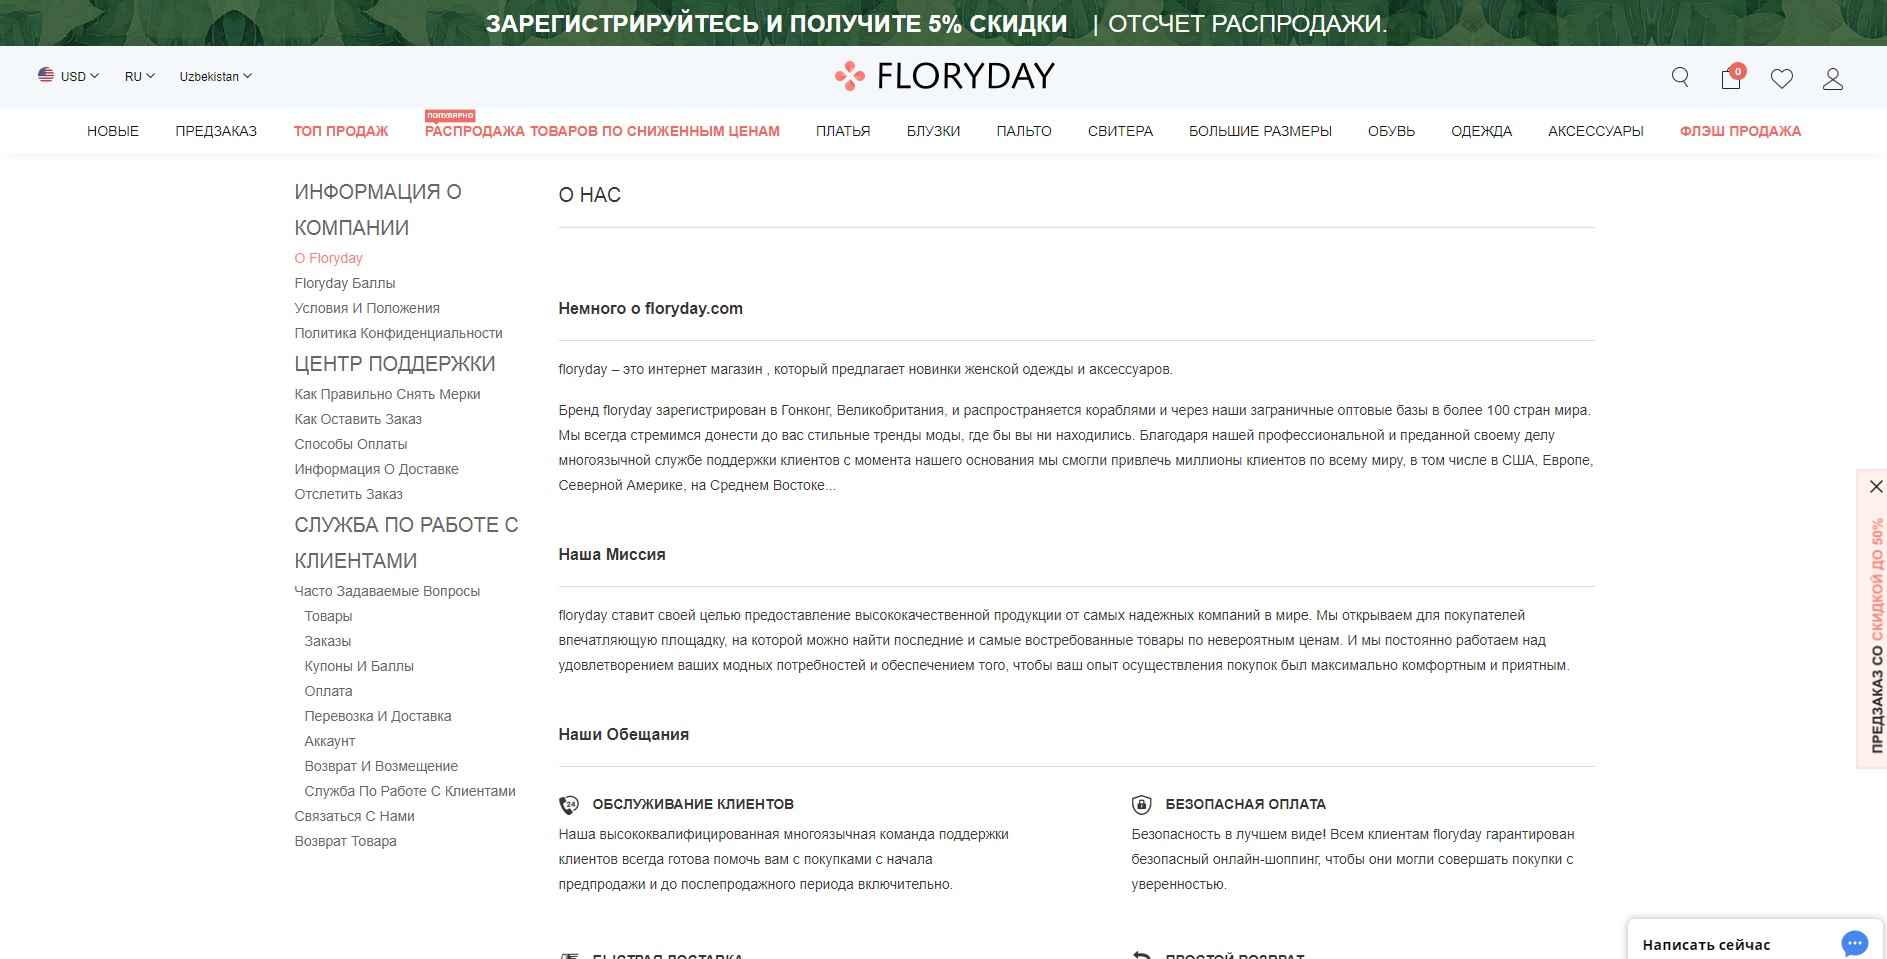 Интернет-магазин Floryday – отзывы покупателей о floryday.com